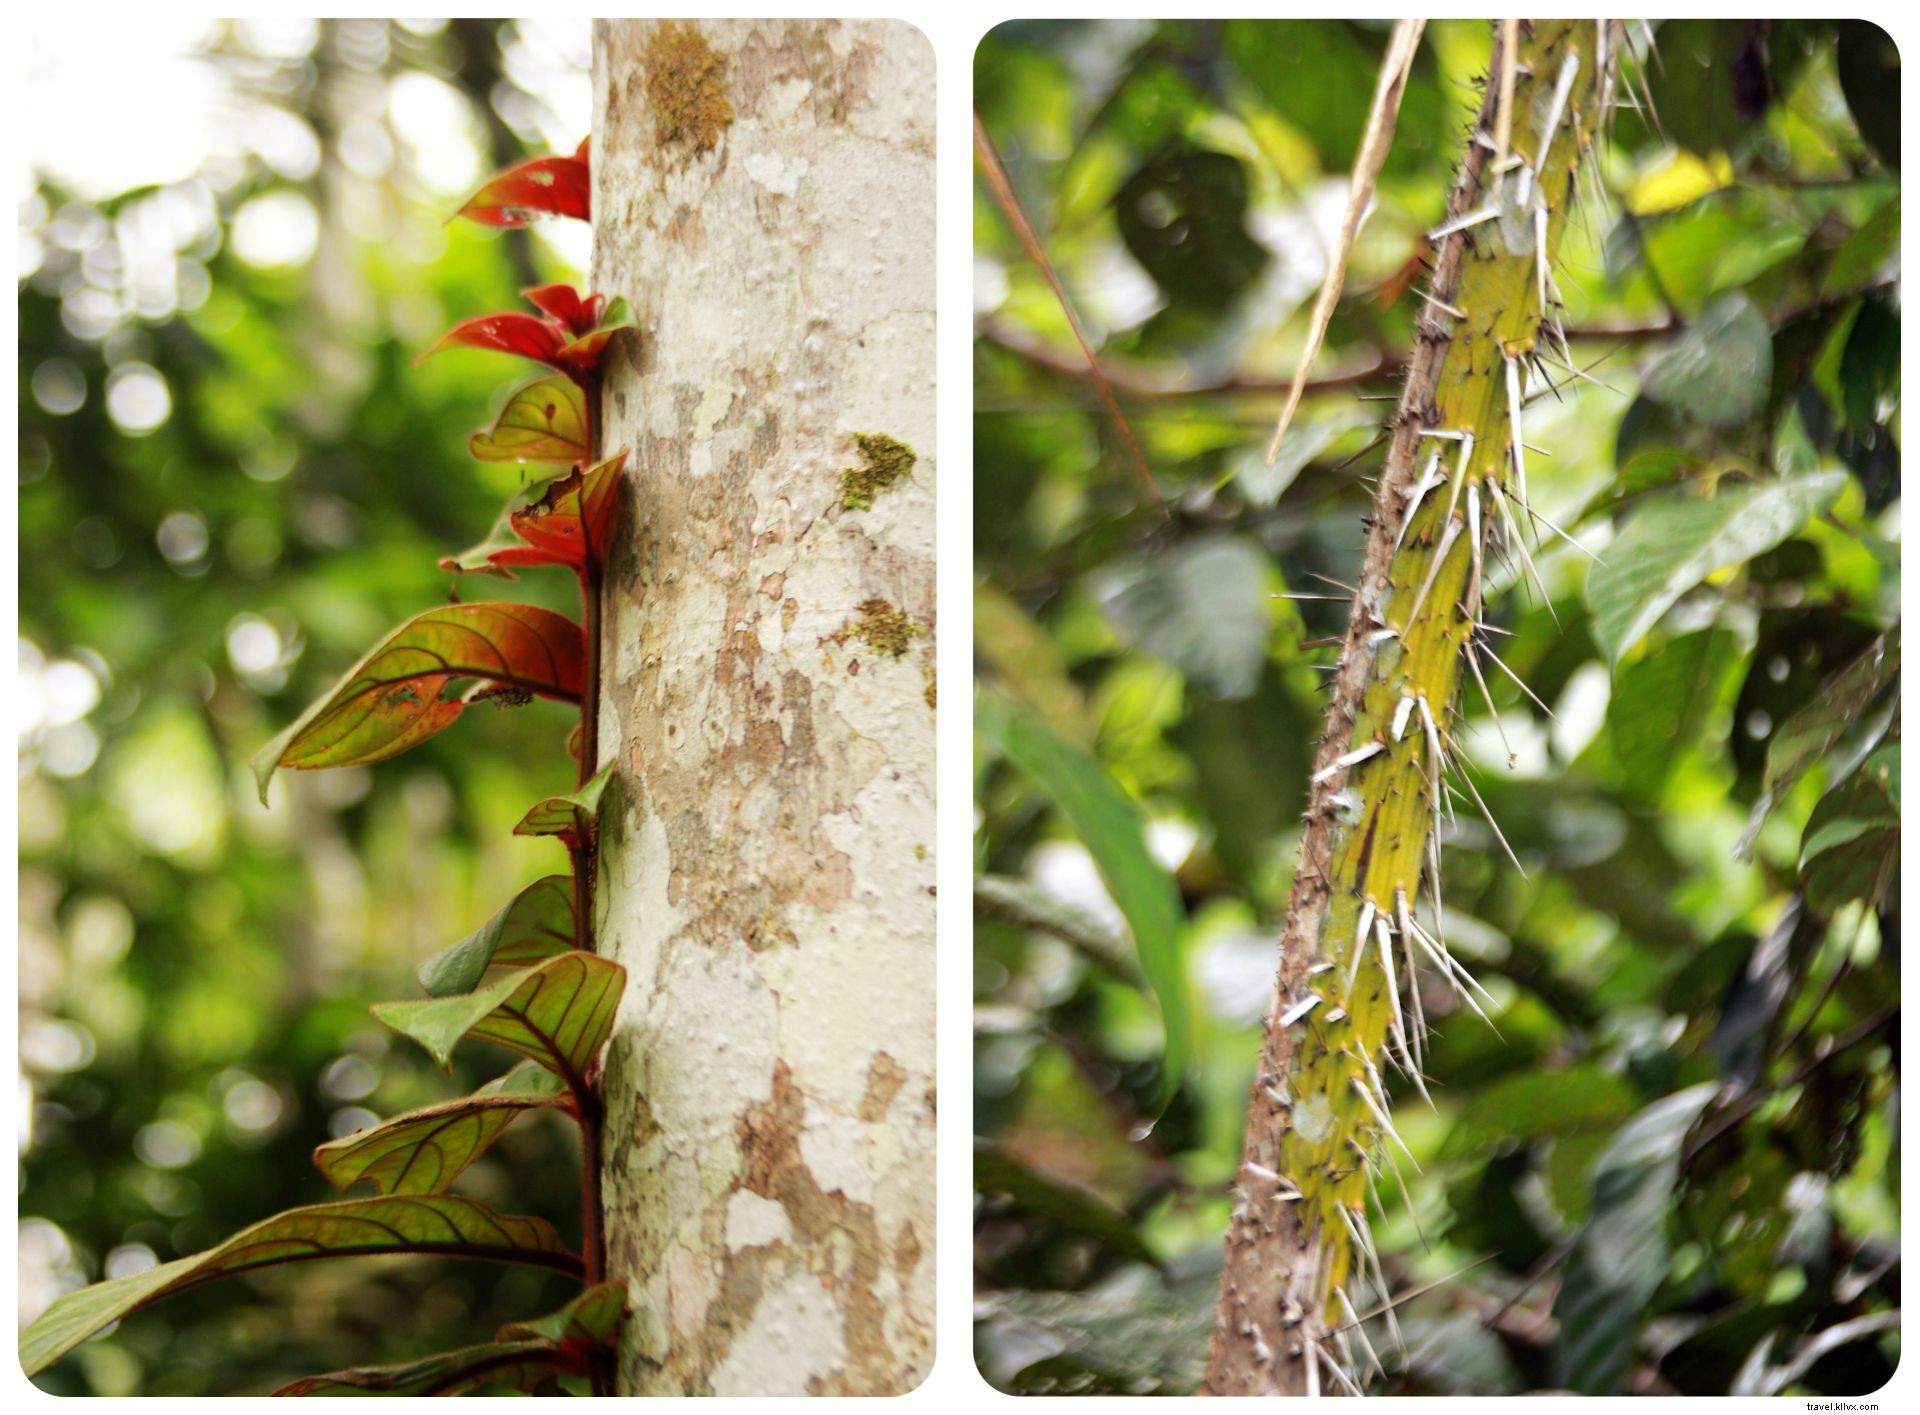 Buscando a mis demonios internos en la selva colombiana:una cita con ayahuasca